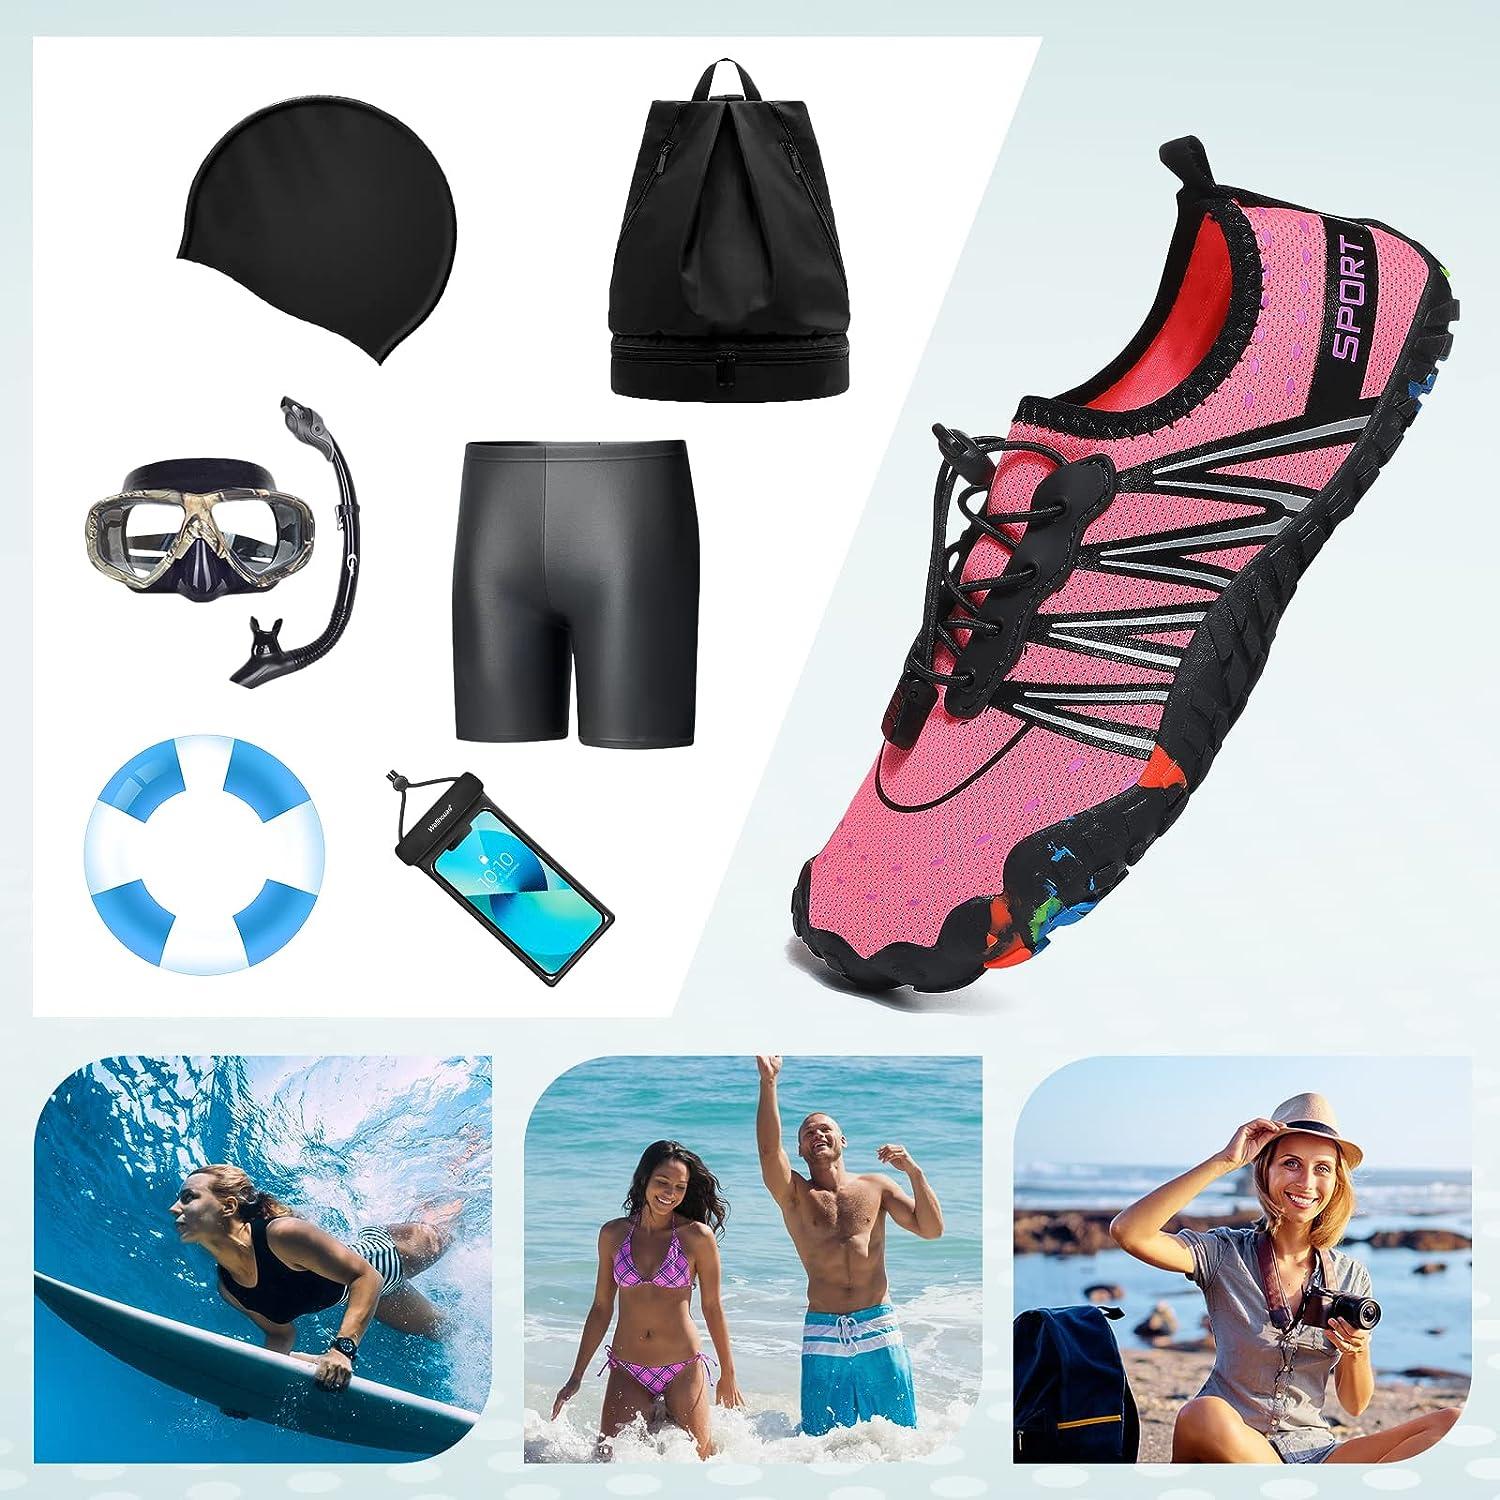 ziitop Water Shoes for Men Women Beach Barefoot Swim Rock Climbing